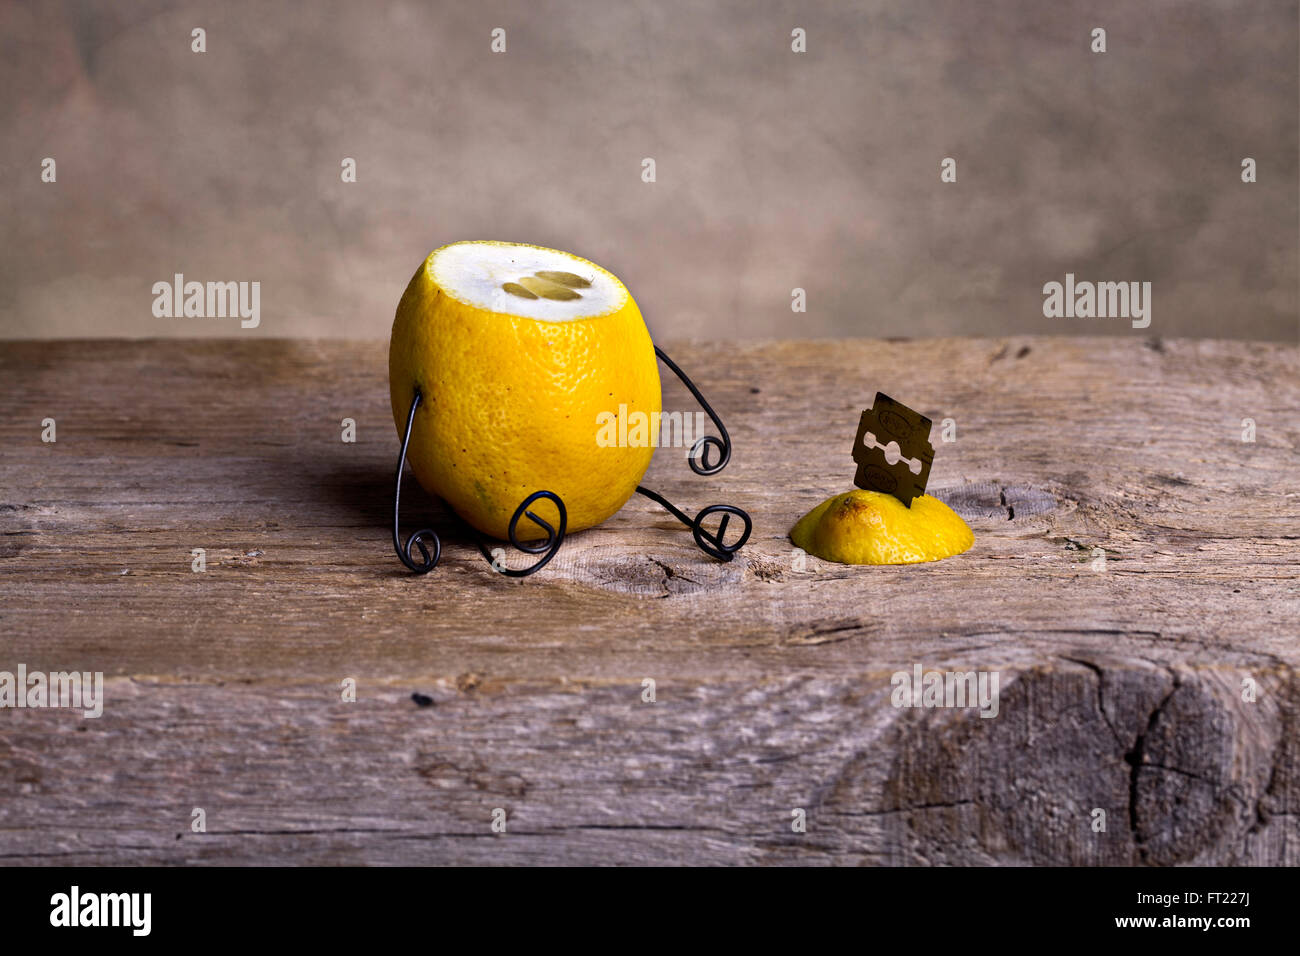 Stilleben mit Zitrone - des choses simples Banque D'Images